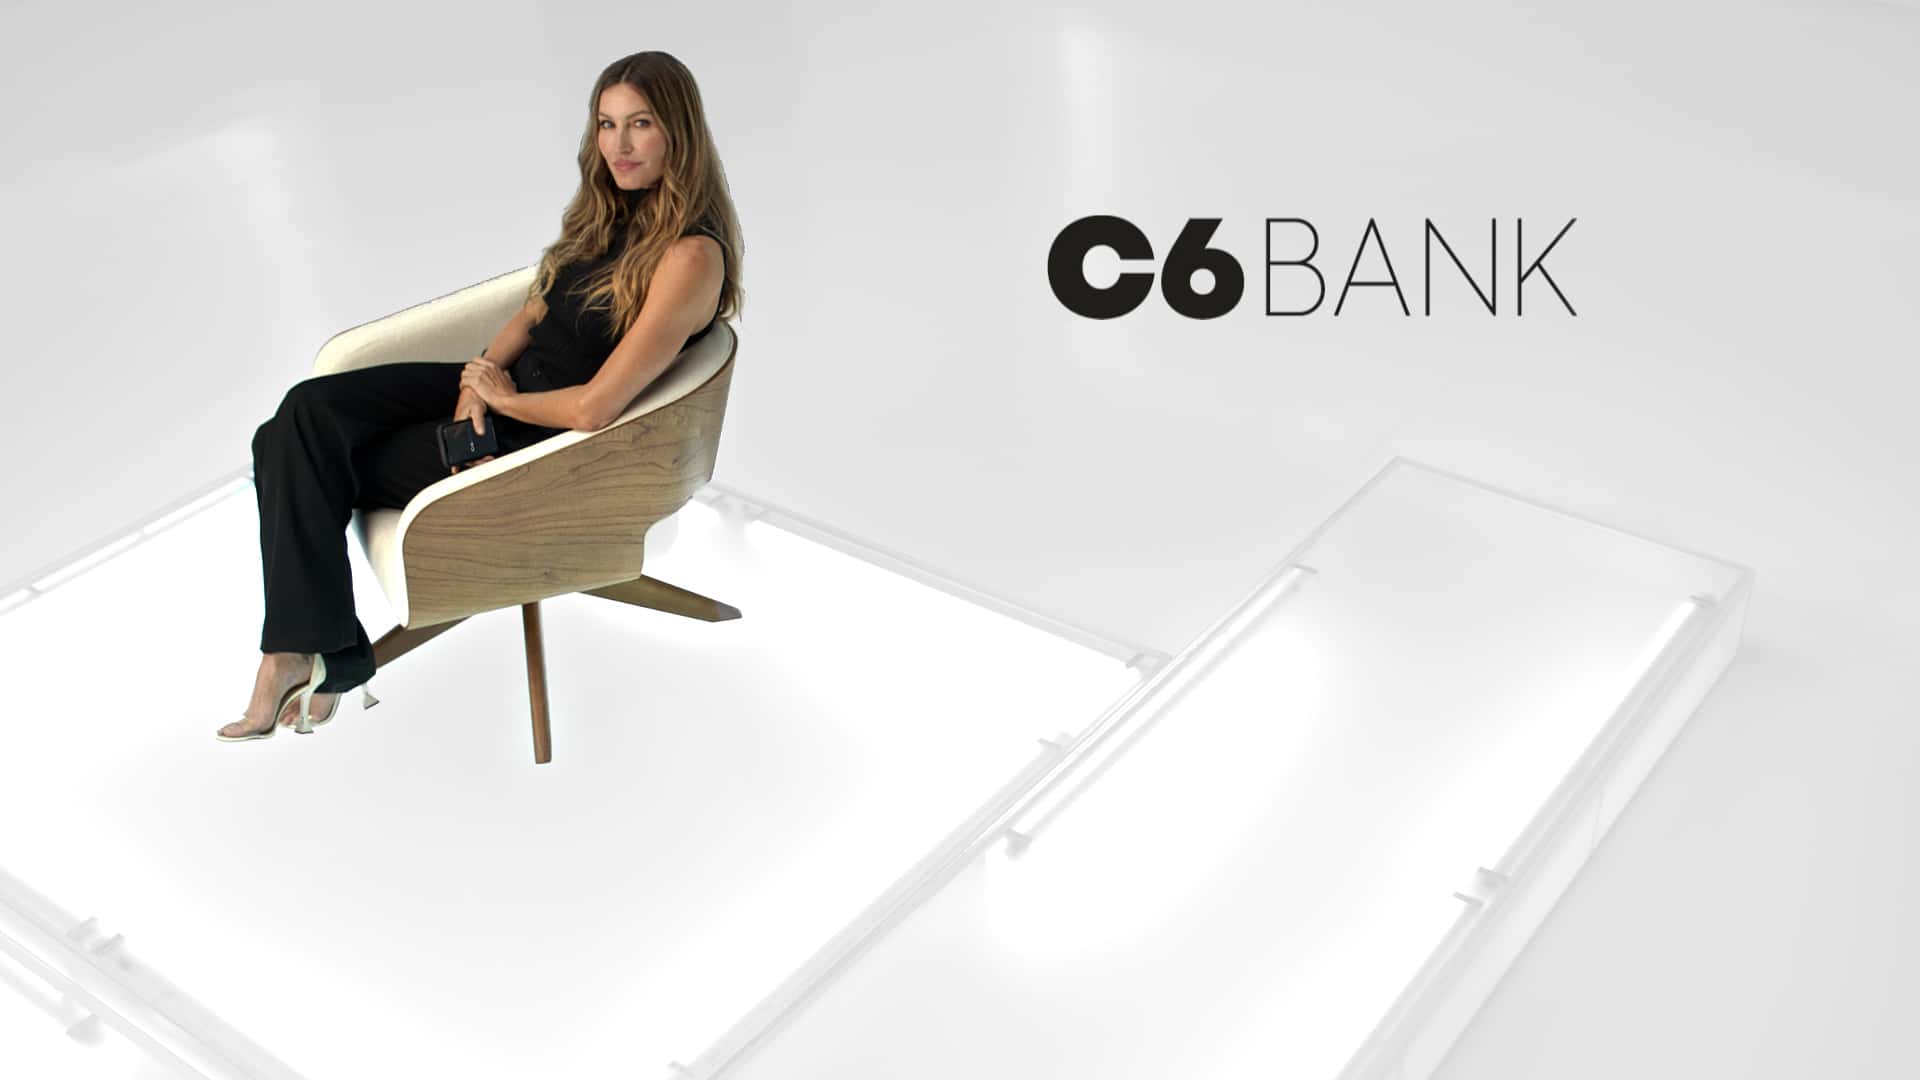 O C6 Bank acaba de lançar nova peça publicitária com protagonismo de Gisele Bündchen.